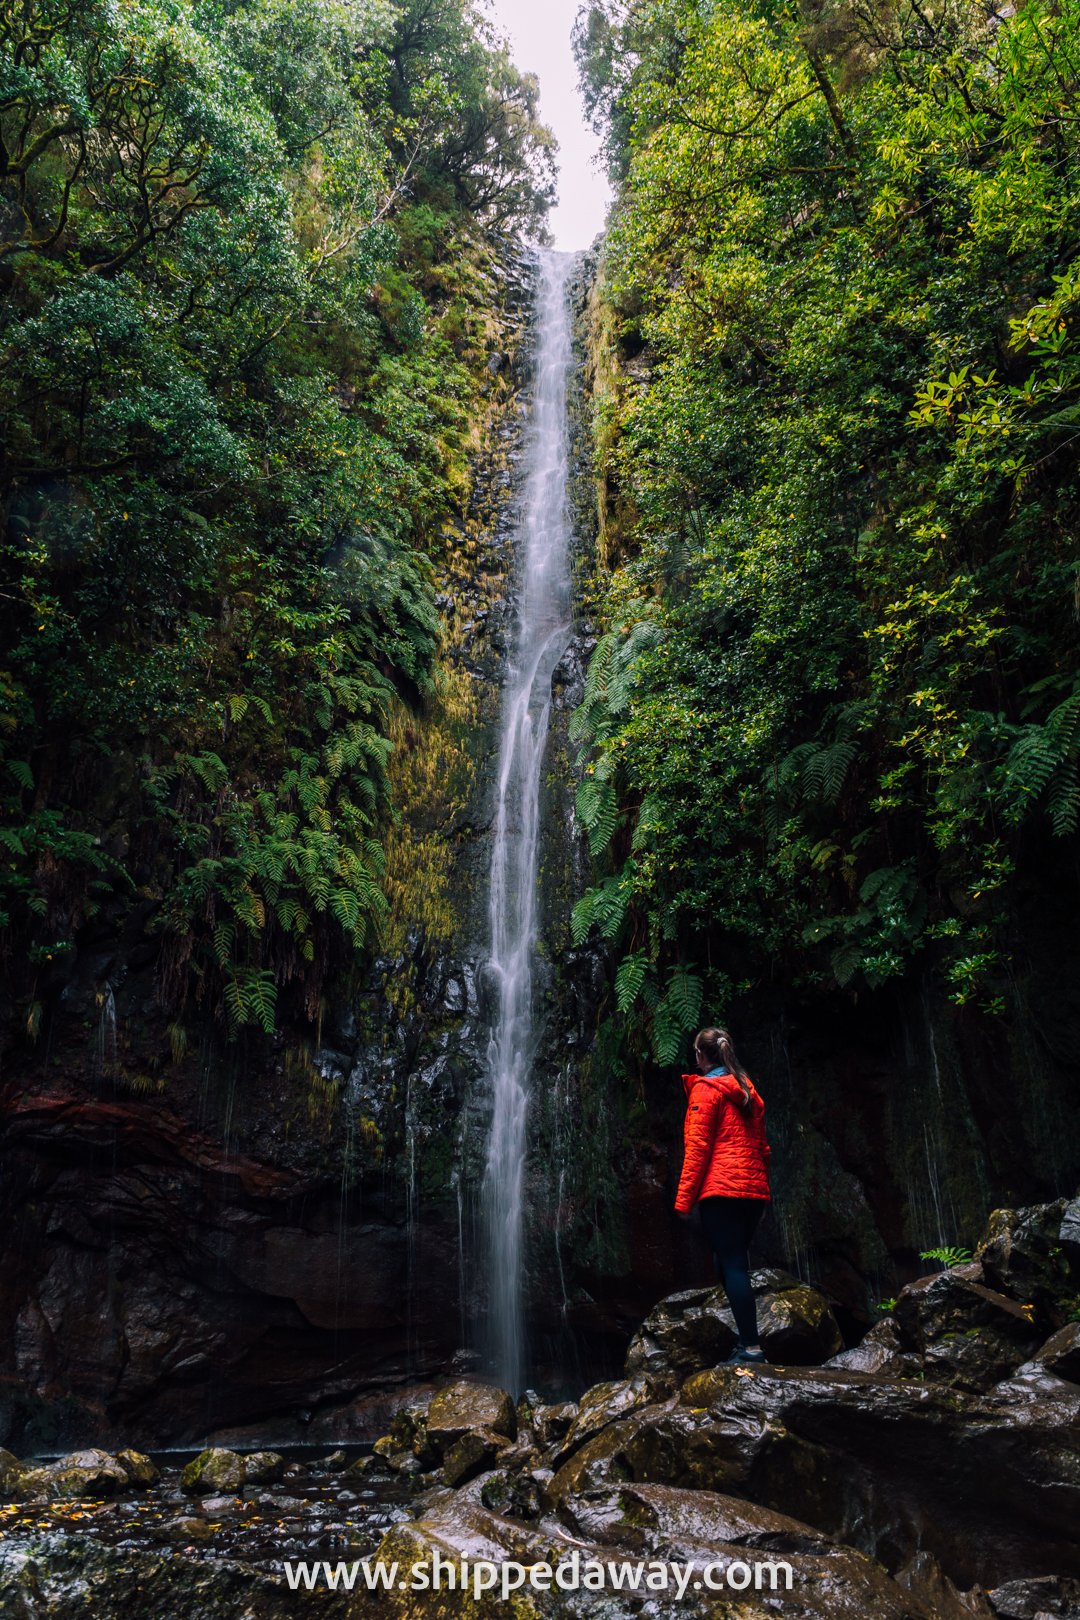 Arijana Tkalčec at 25 Fontes waterfall in Madeira